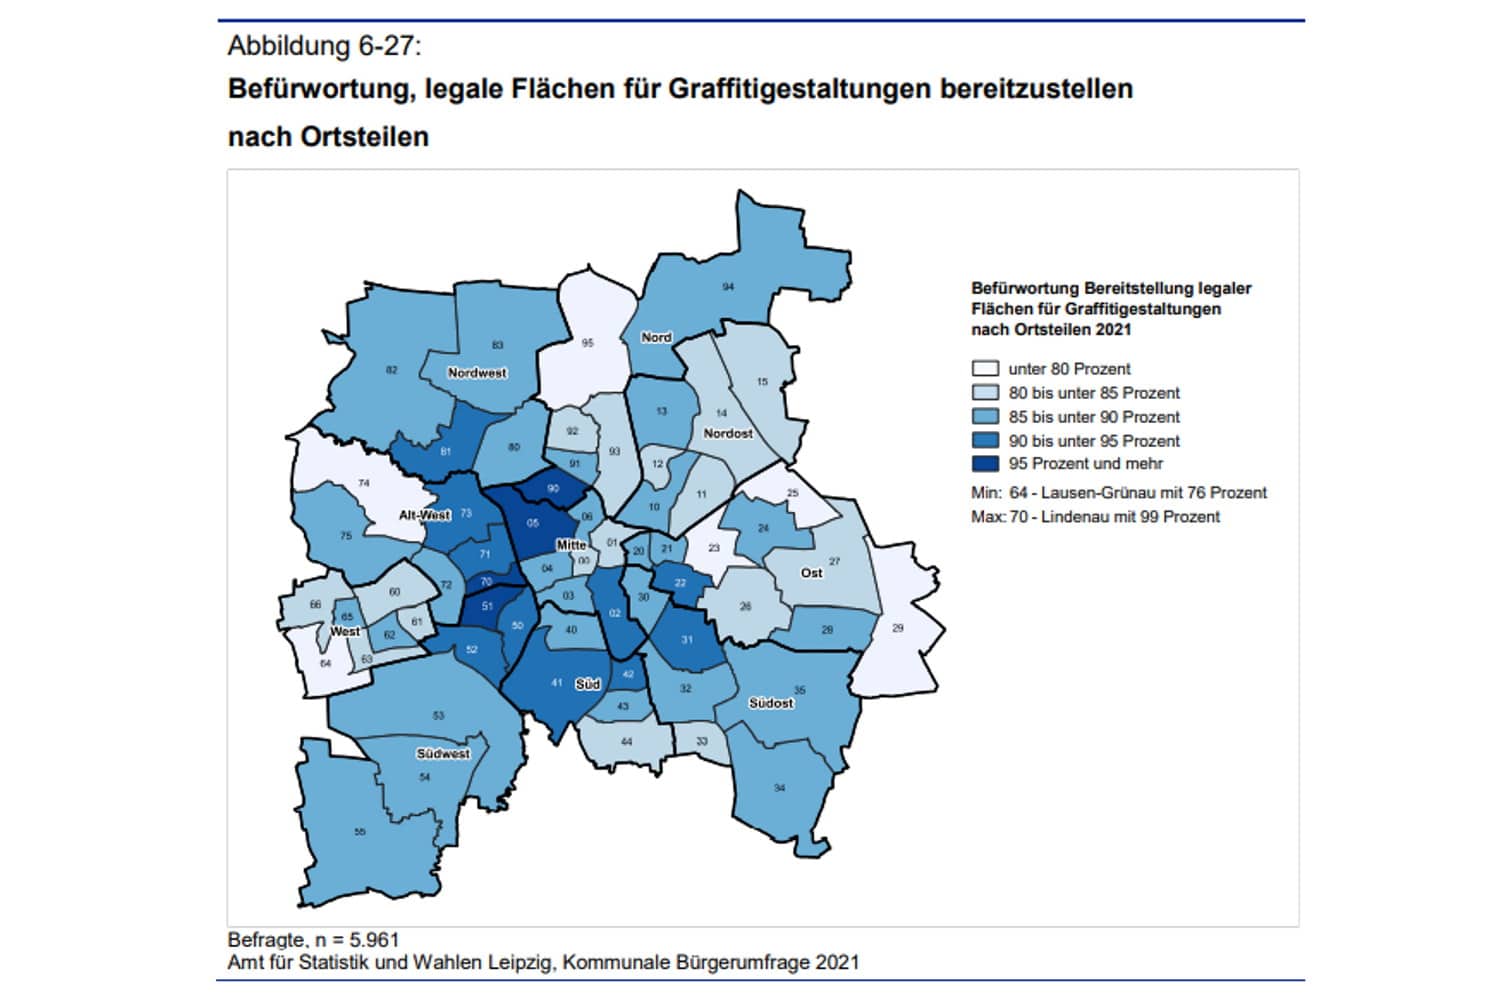 Befürwortung legaler Graffiti-Flächen in den Ortsteilen. Grafik: Stadt Leipzig, Bürgerumfrage 2021